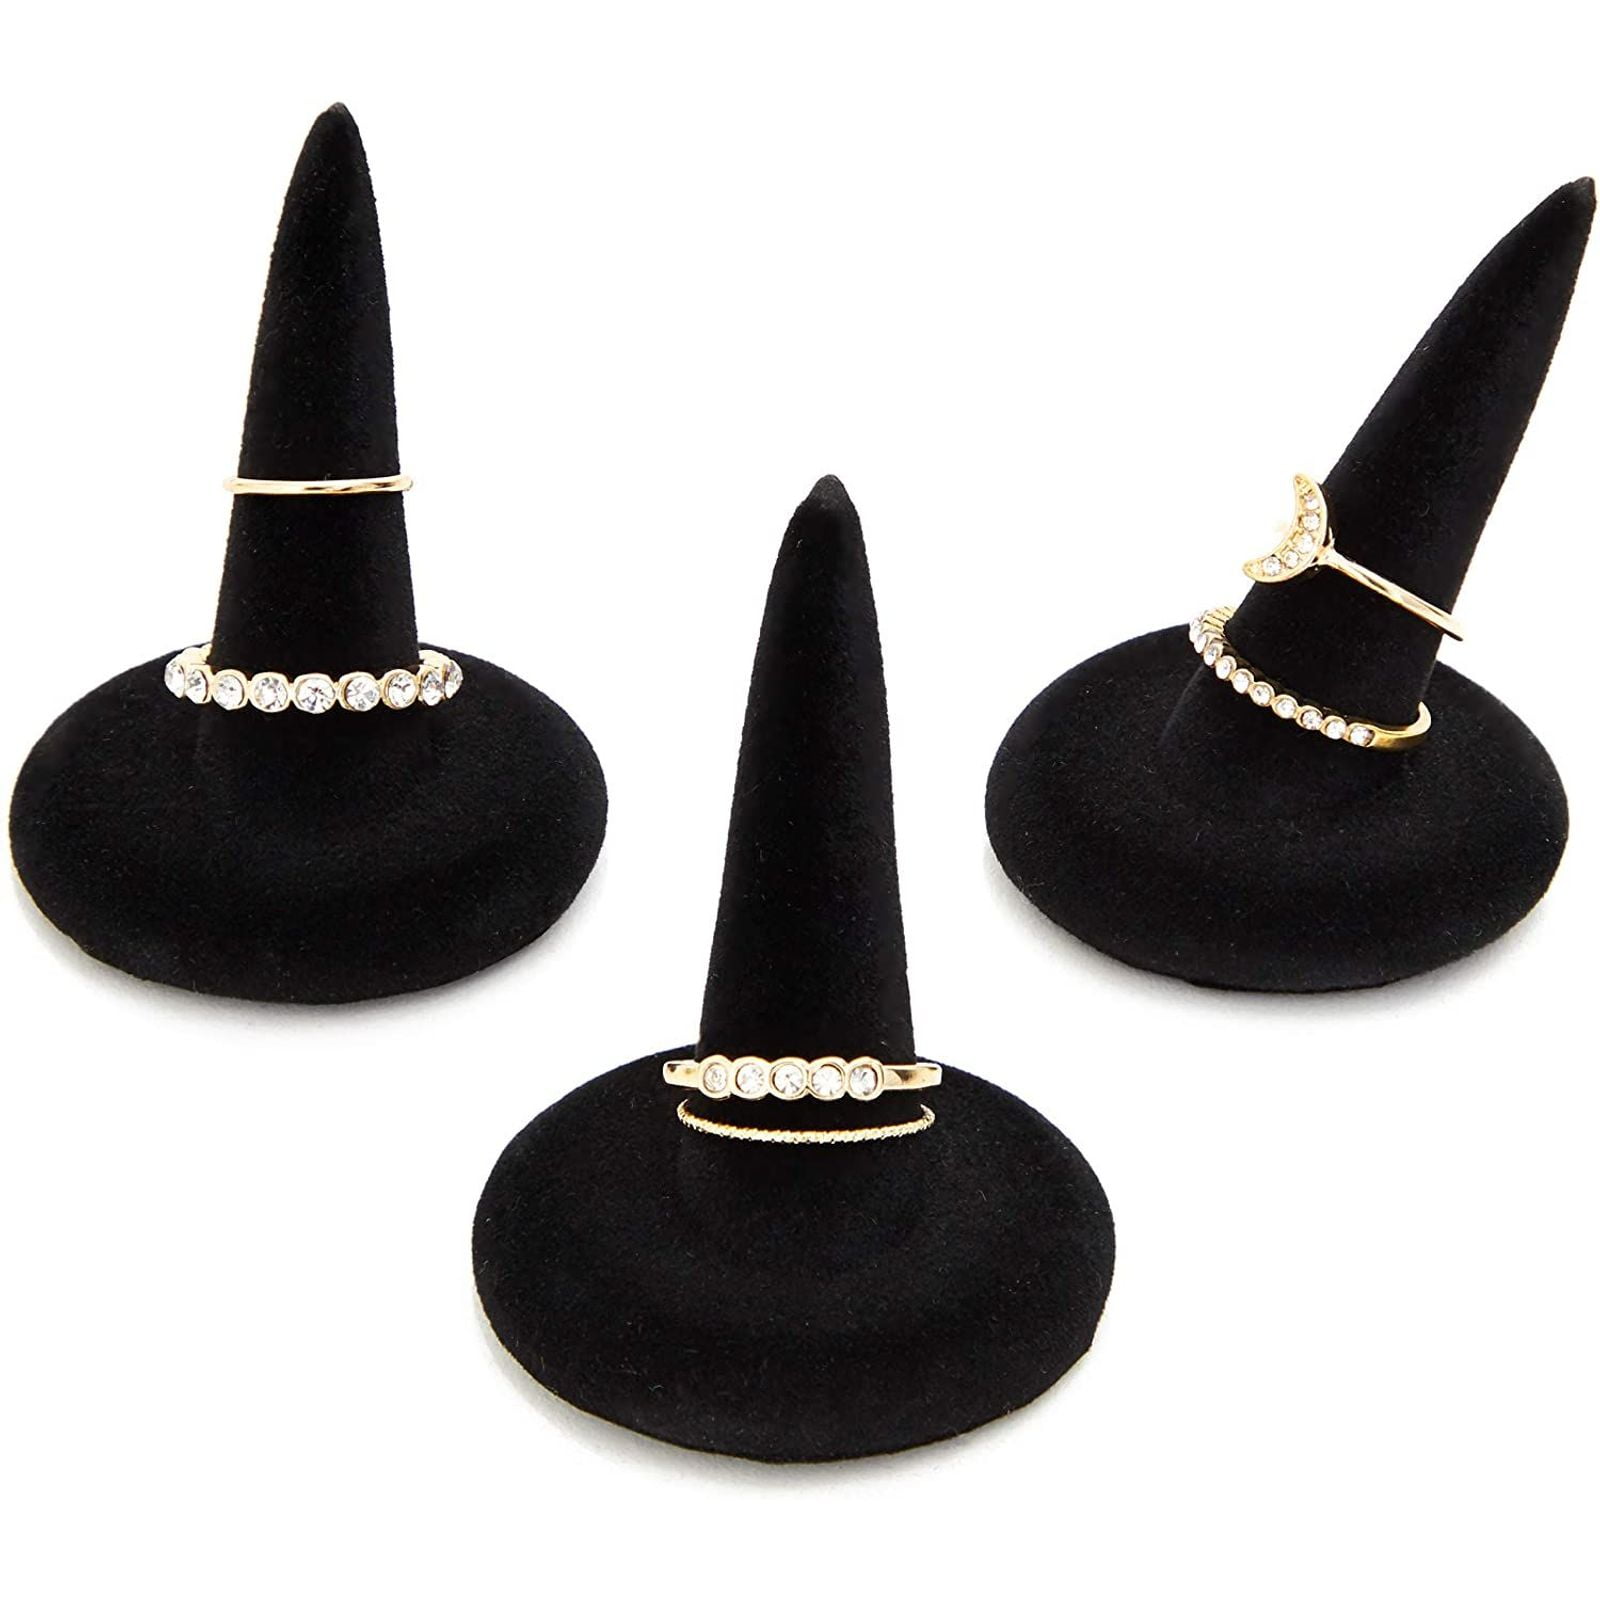 Black Velvet 12 Finger Ring Display Holder Organizer Retail Jewelry Showcase 